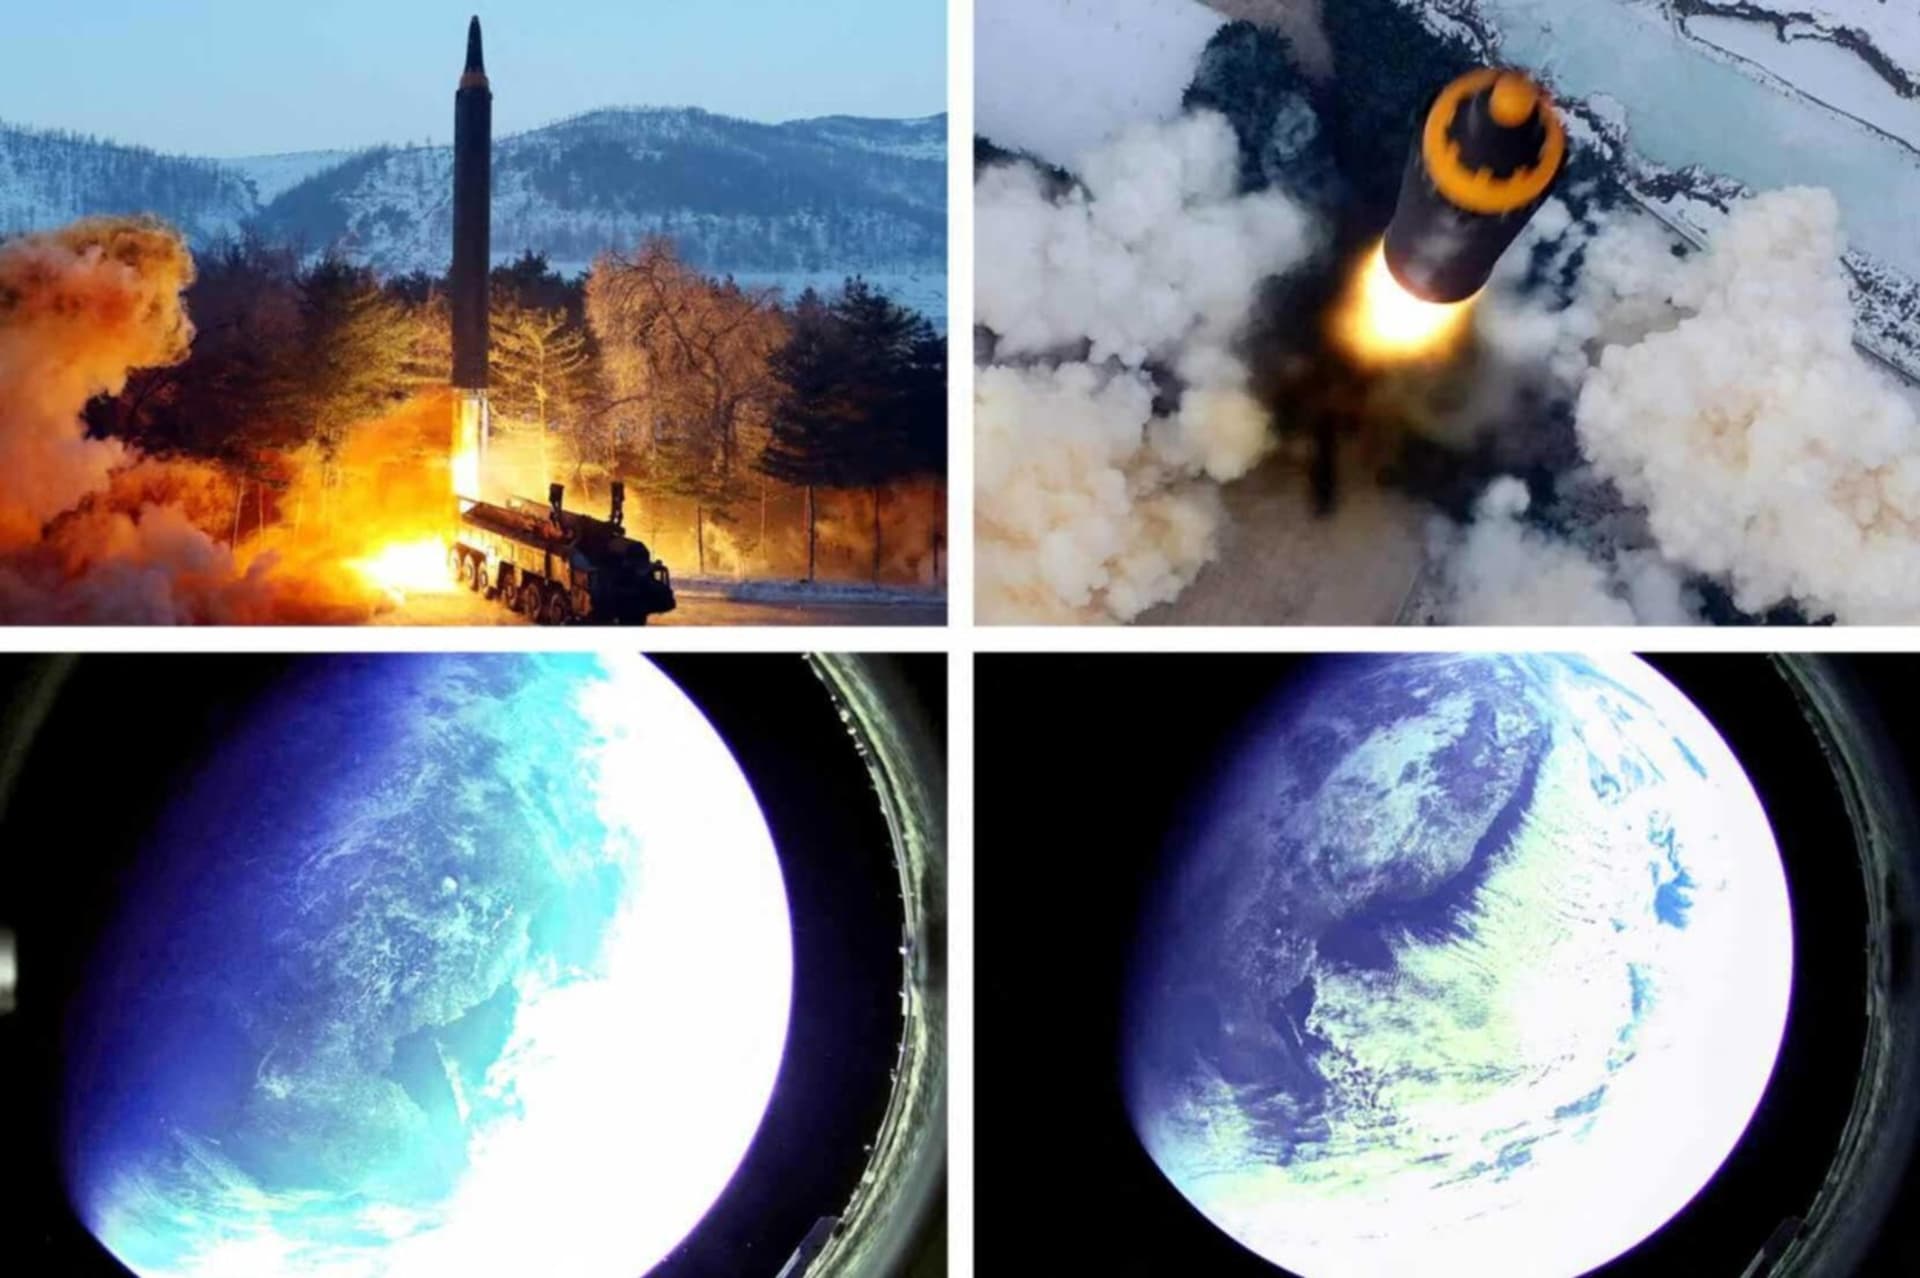 Severokorejská státní média zveřejnila neobvyklou sérii snímků, která byla údajně pořízená při testu balistické rakety středního doletu.